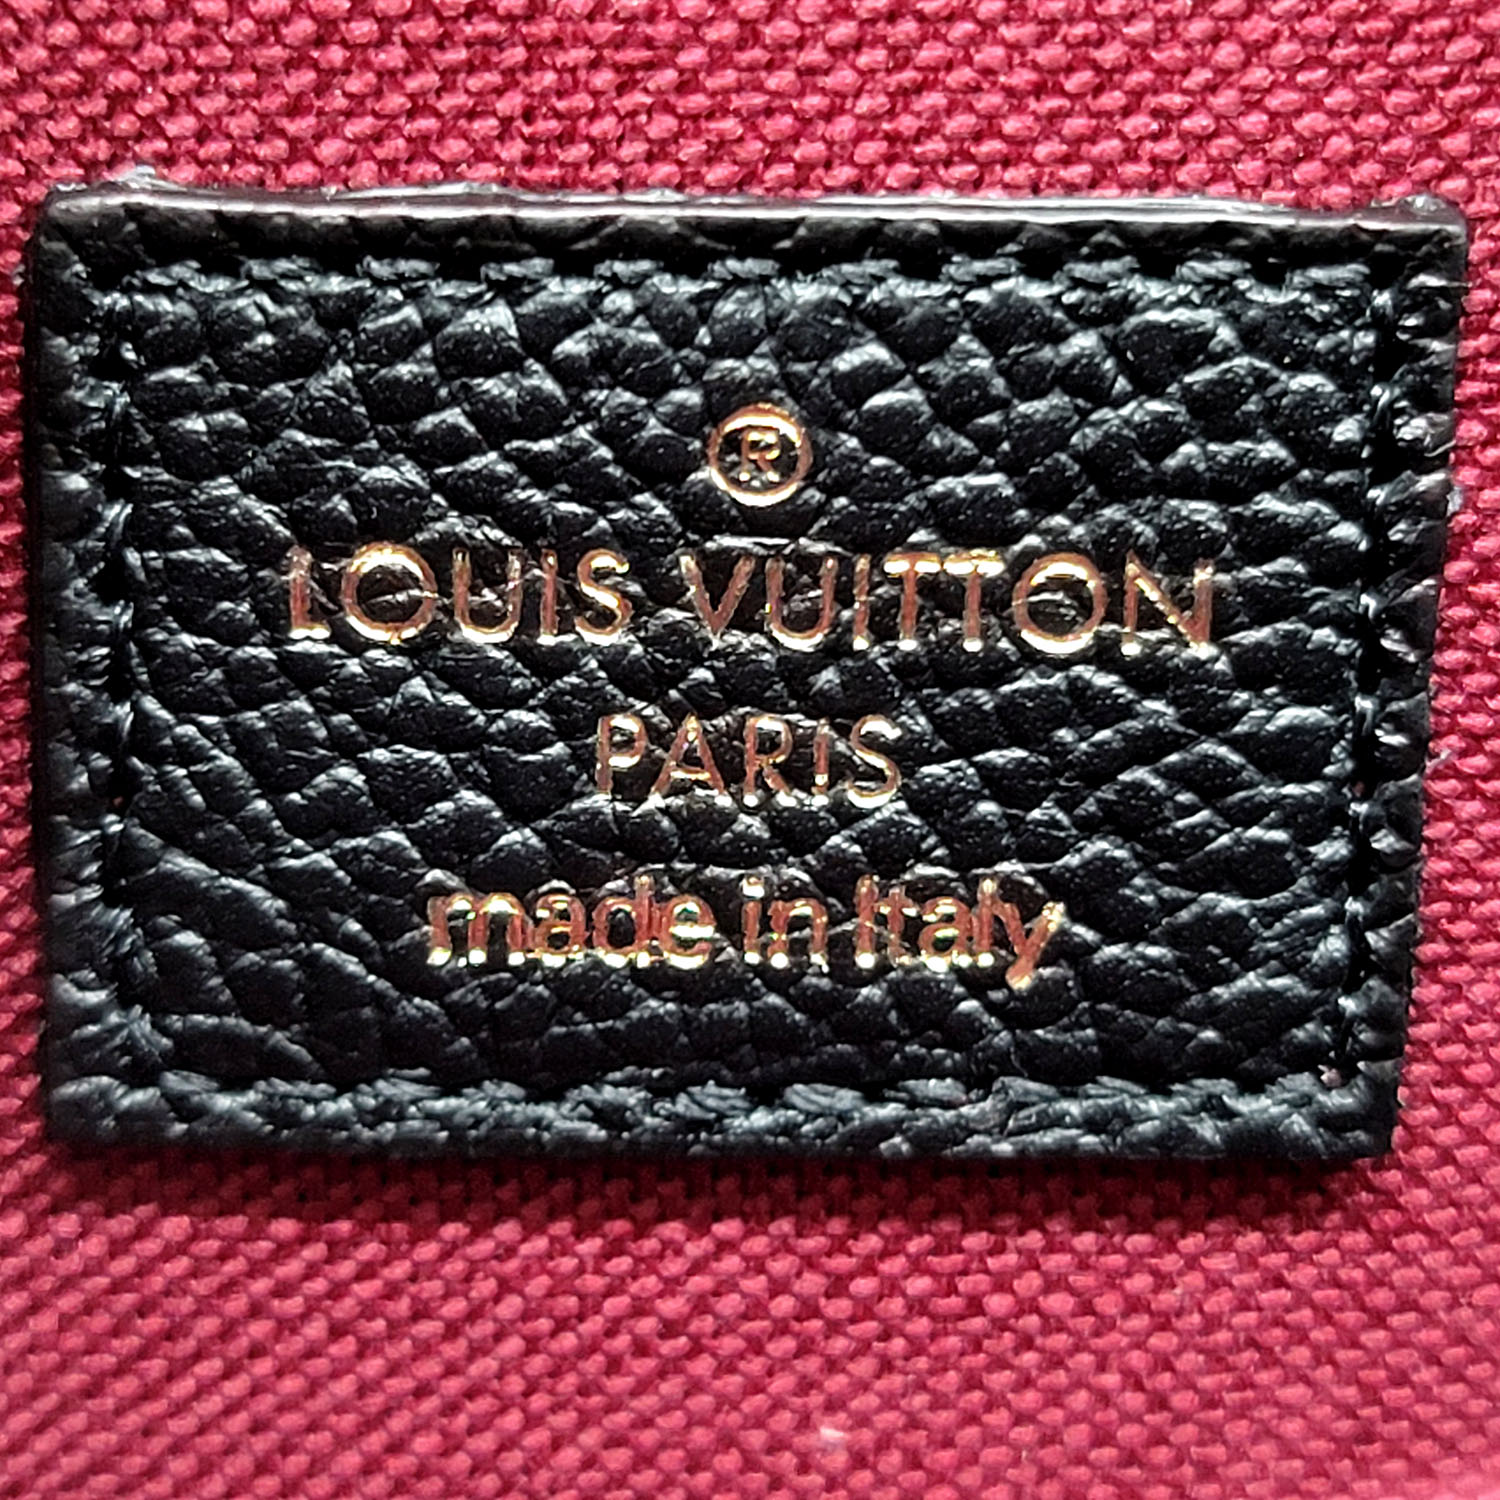 Louis Vuitton Félicie Pochette Bicolor Monogram Empriente Black